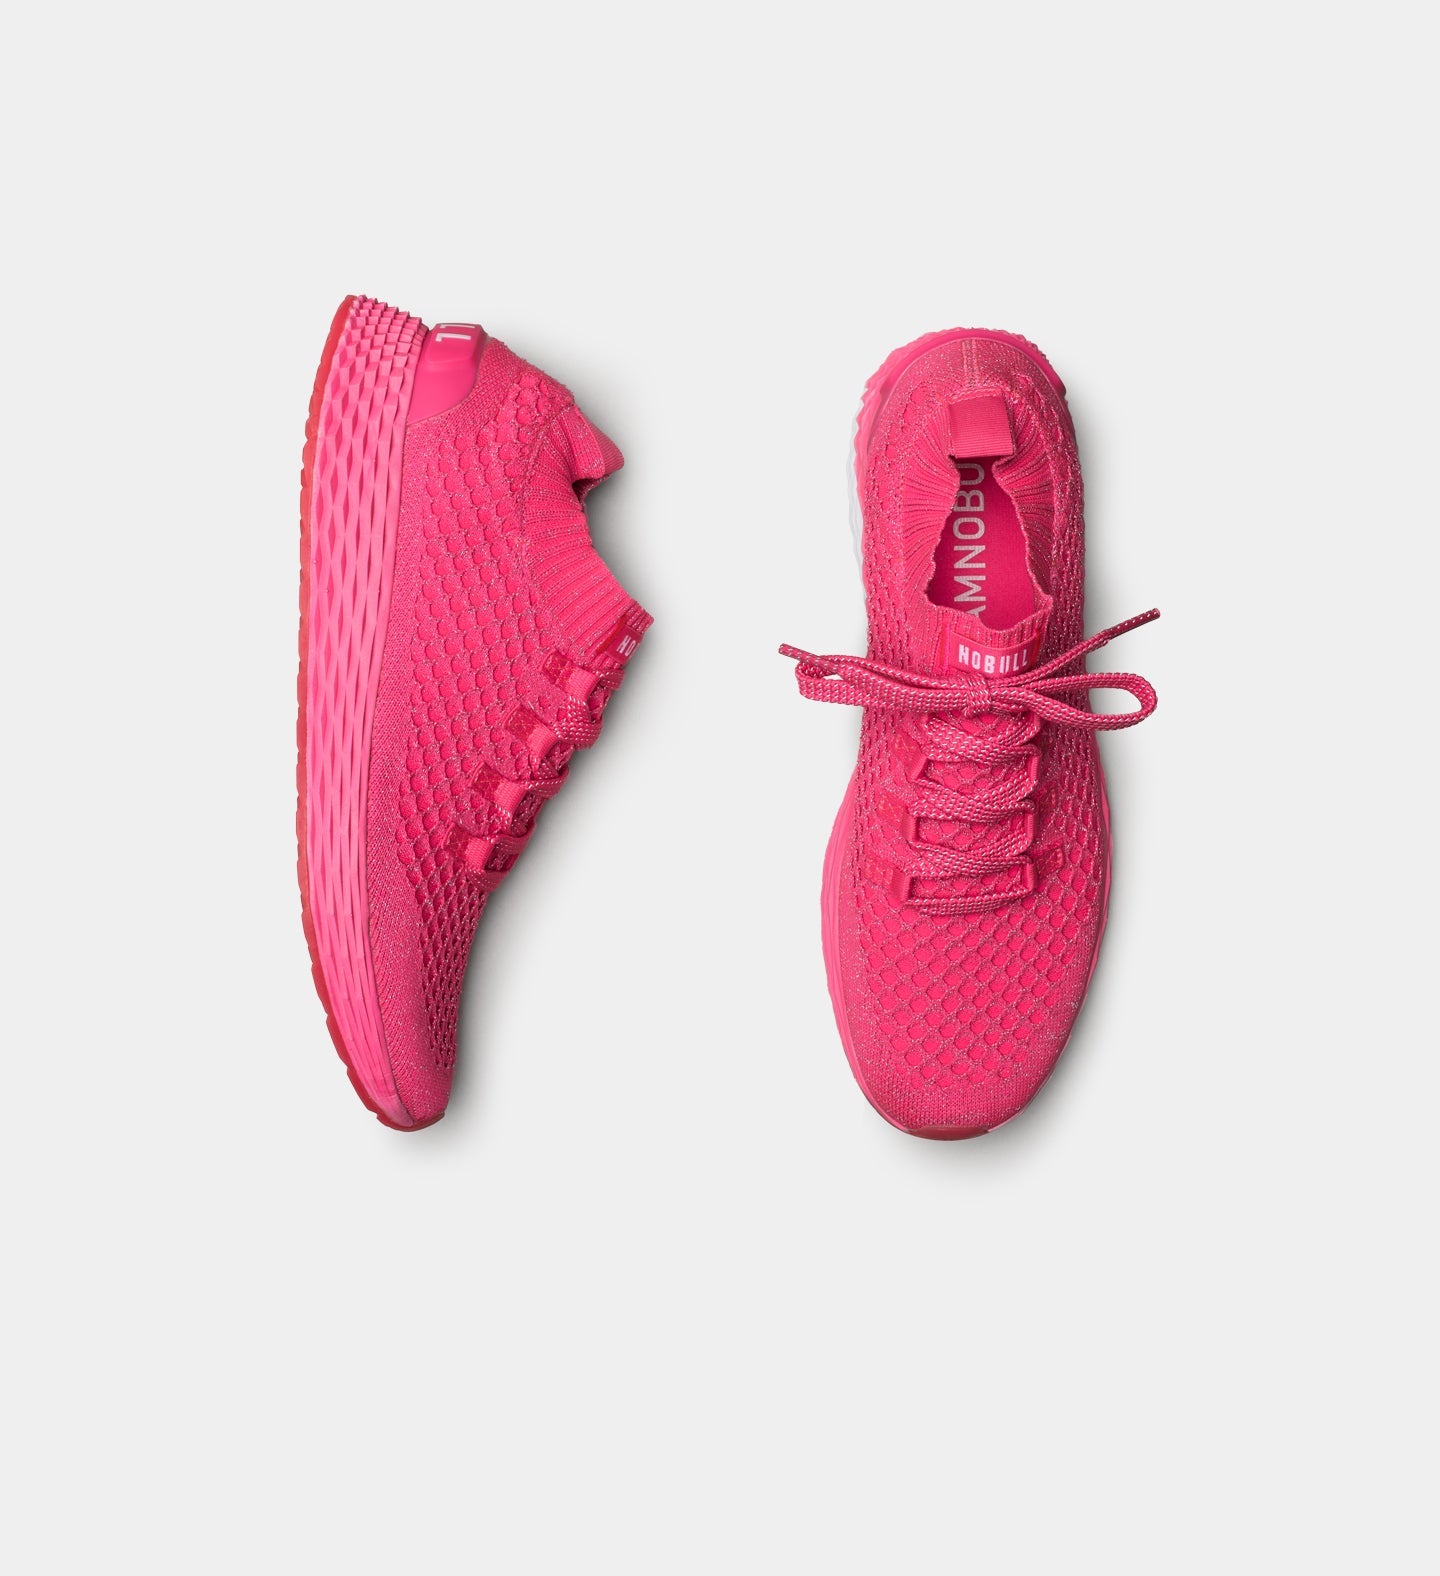 NOBULL - Women's Knit Runner - Bright Pink - Size 7